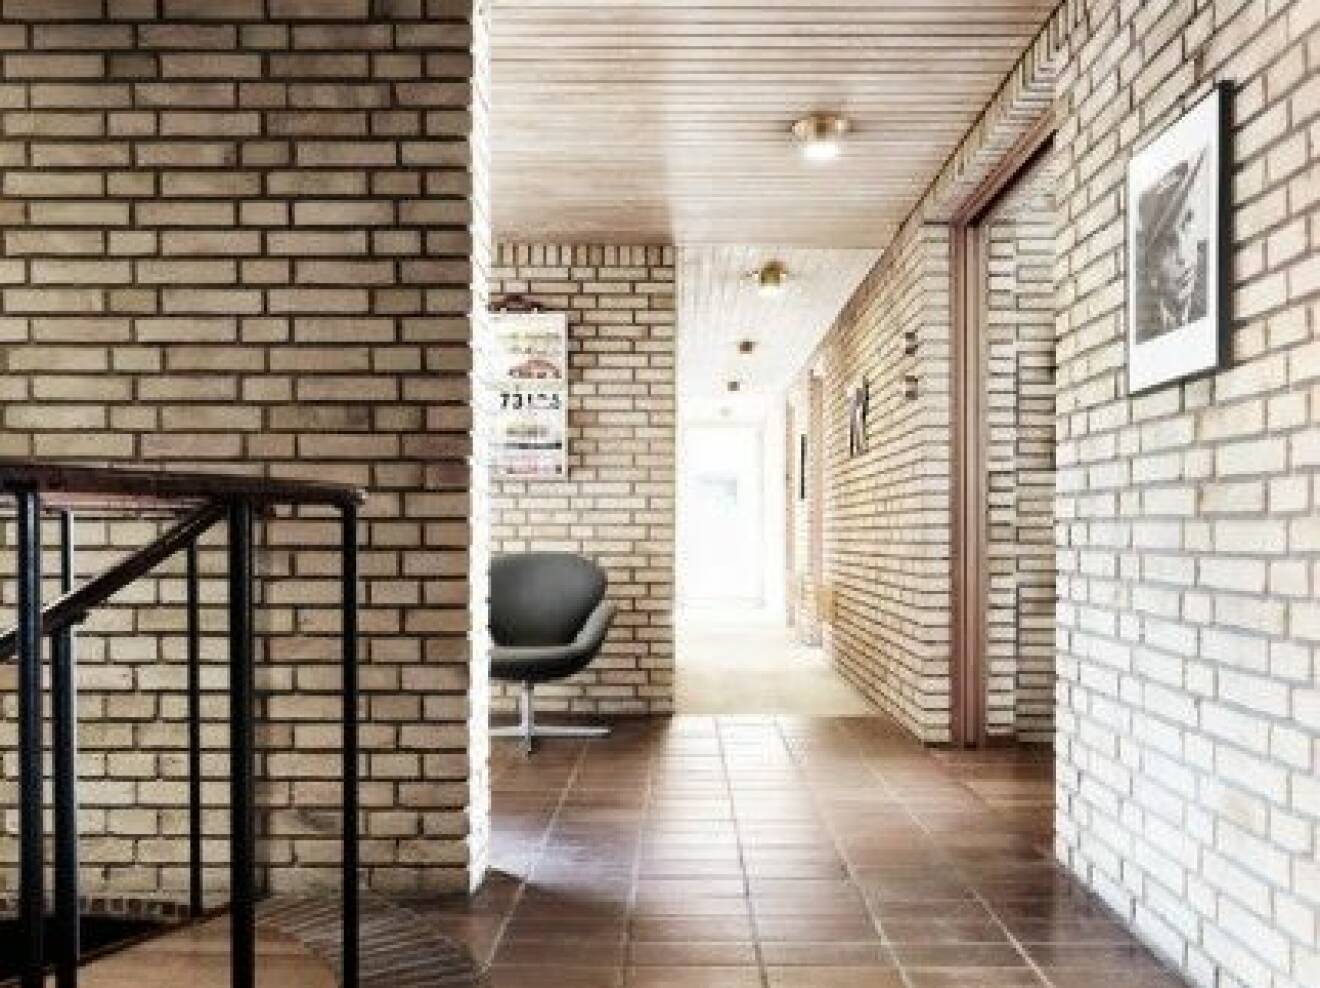 Korridor_1-60-tal-tegelvilla-gult-tegel-inspiration